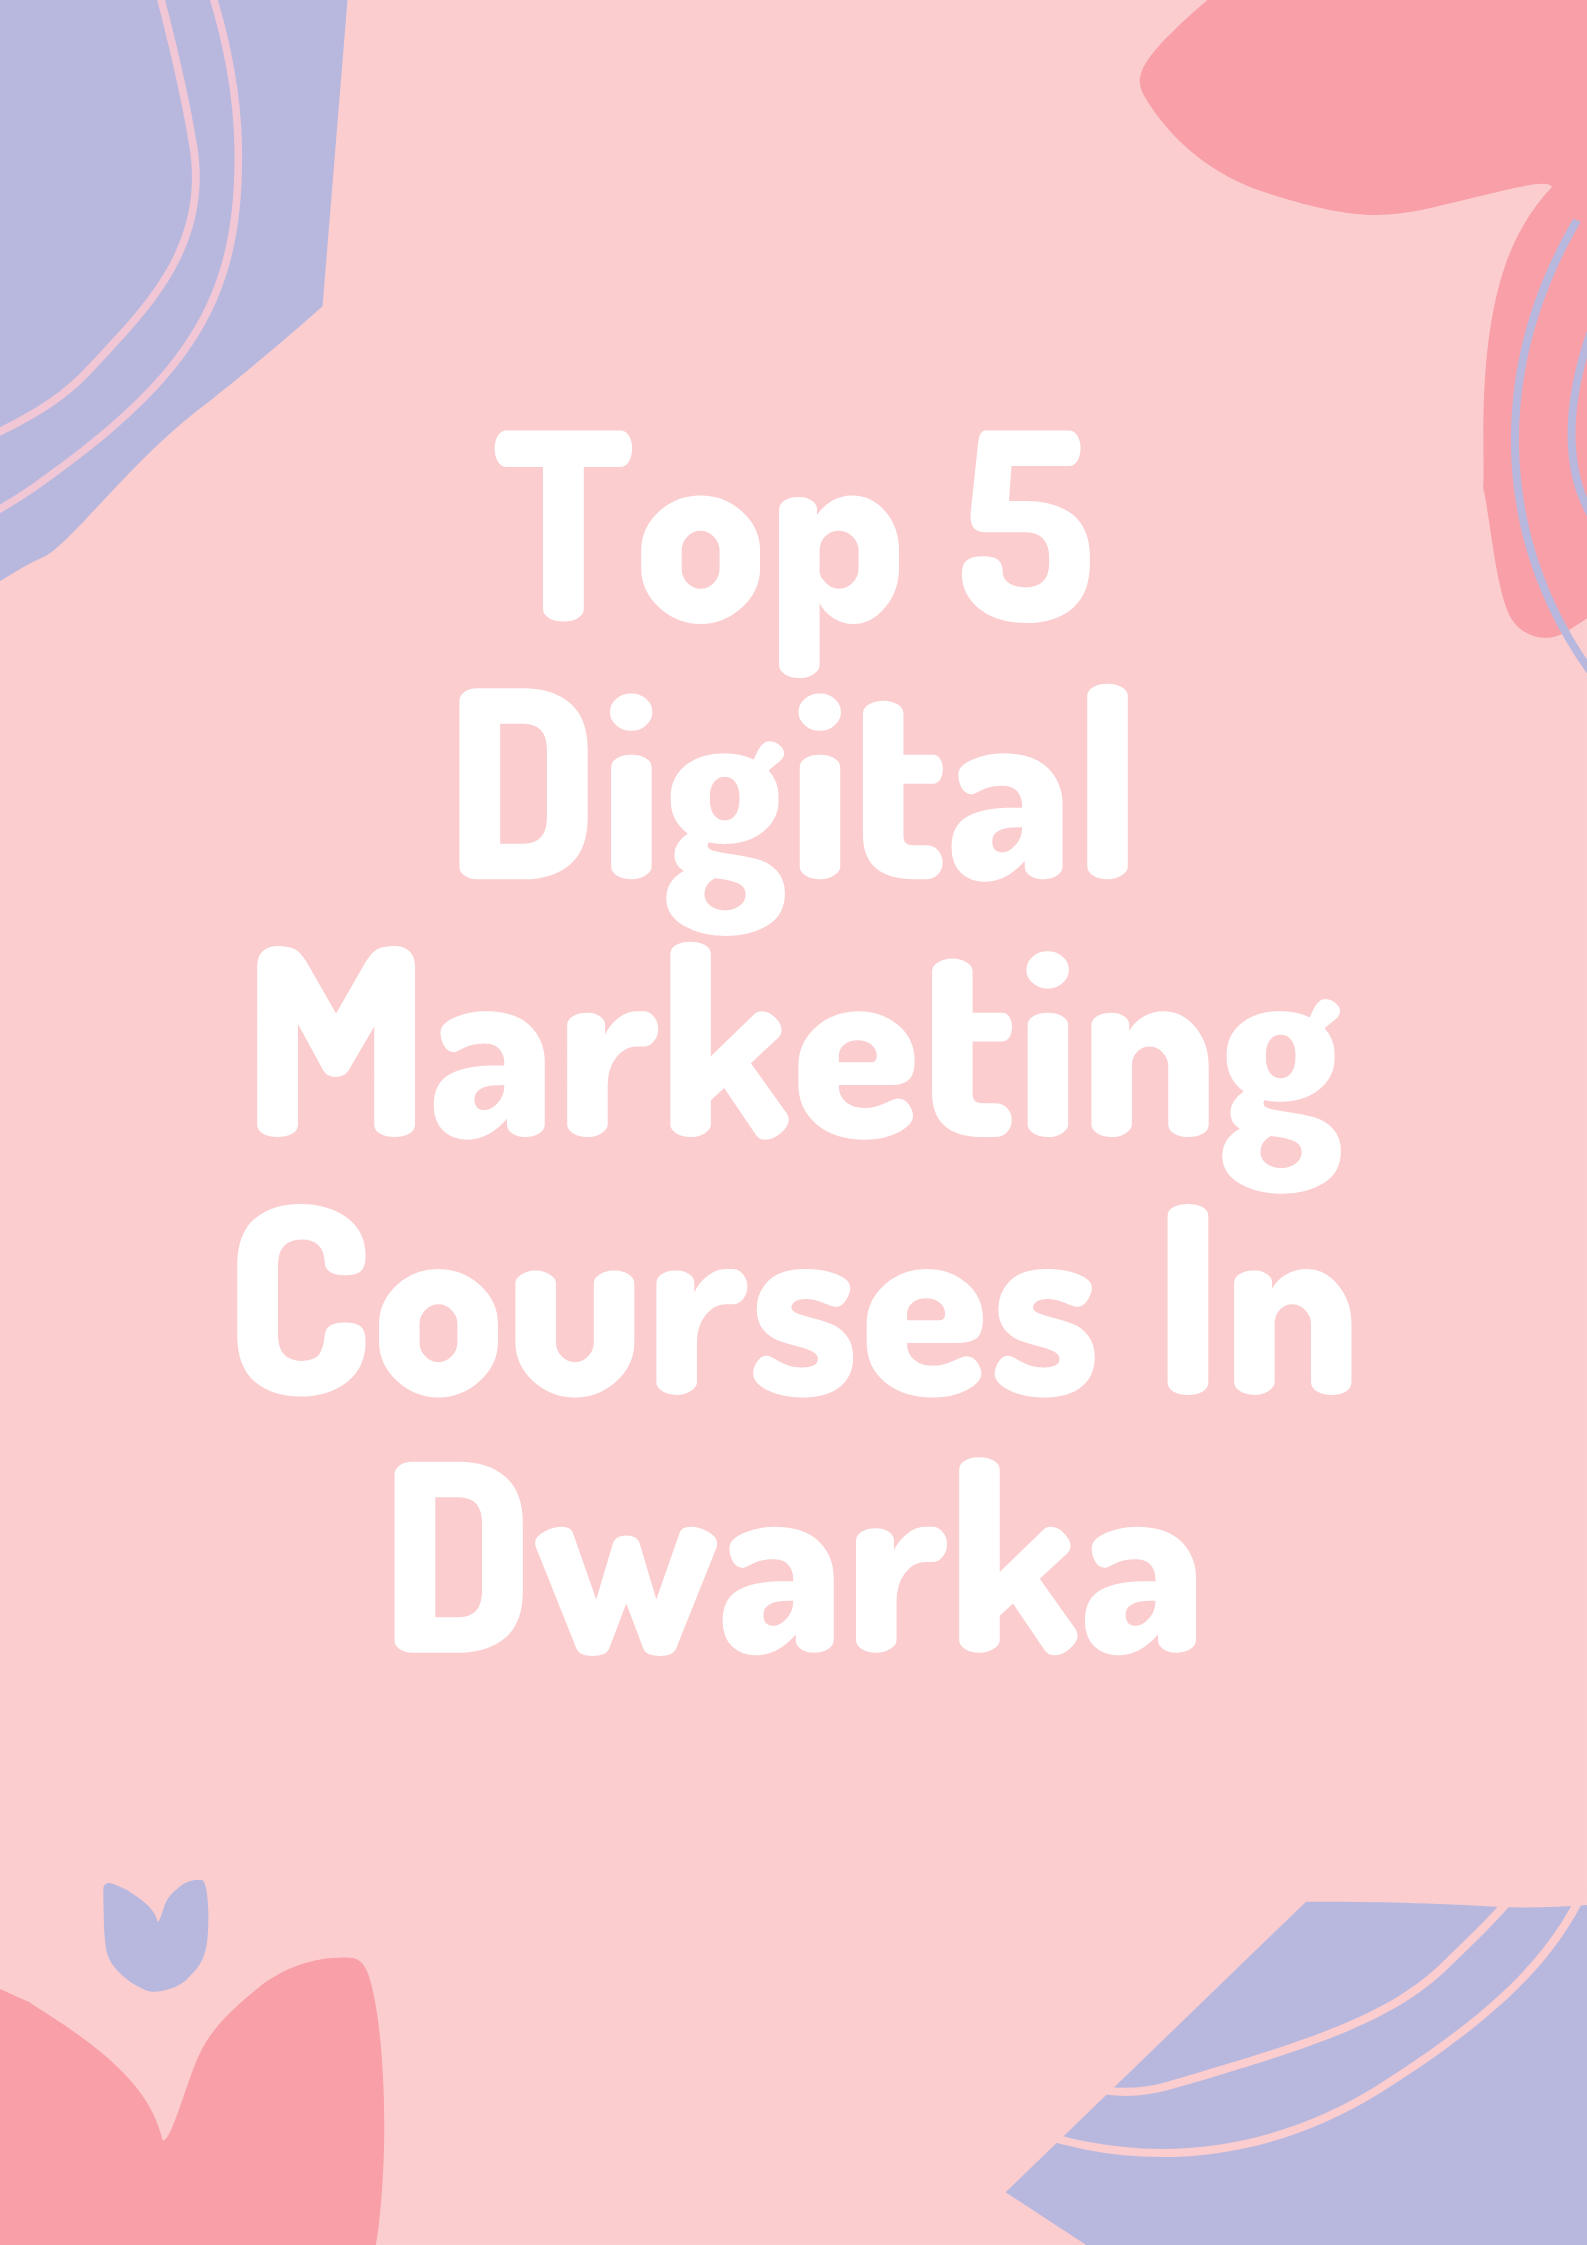 Top 5 Digital Marketing Courses In Dwarka